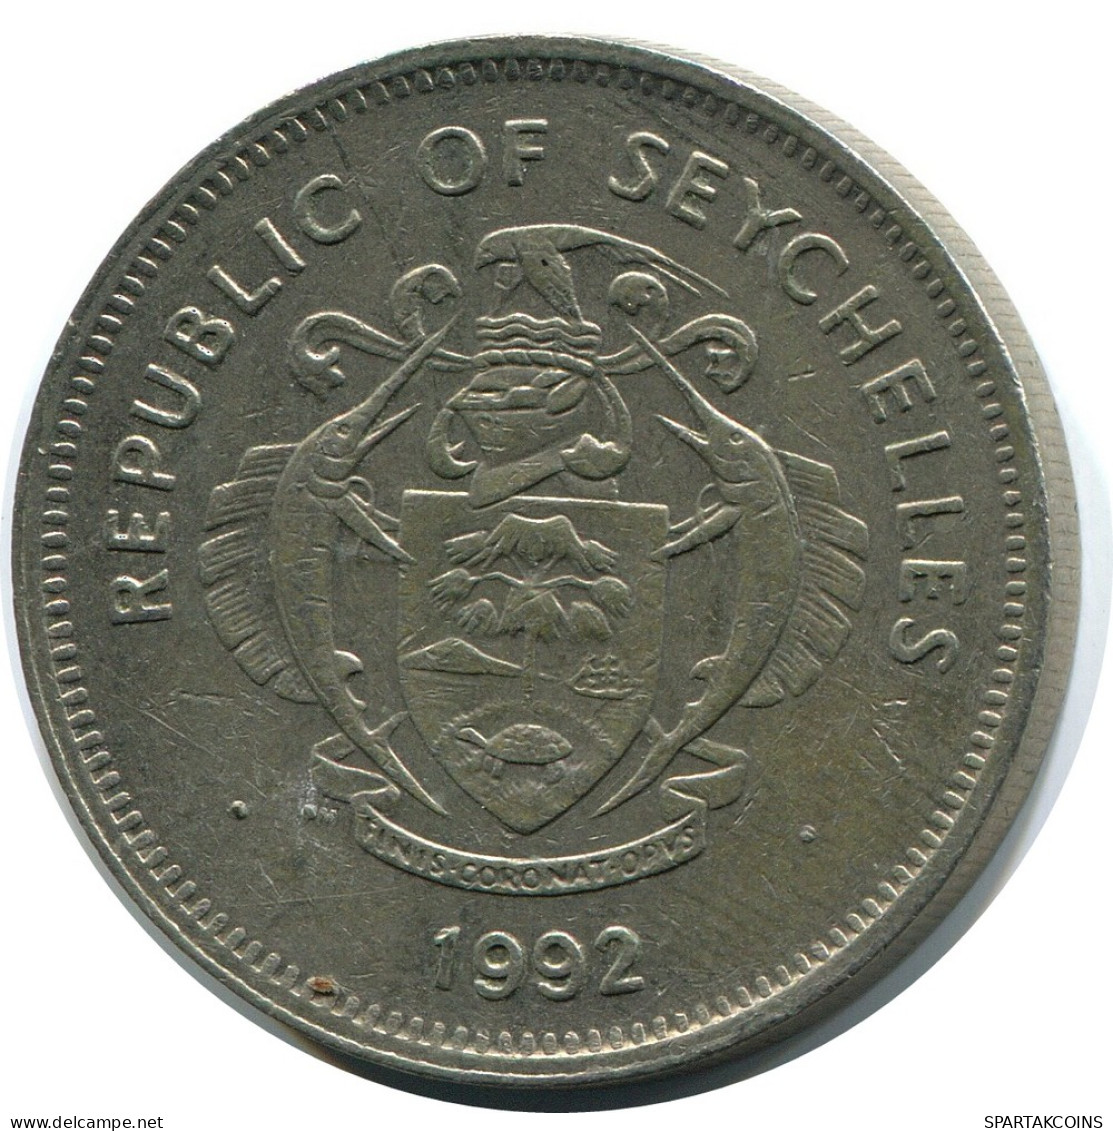 1 RUPEE 1992 SEYCHELLES Coin #AZ240.U - Seychellen